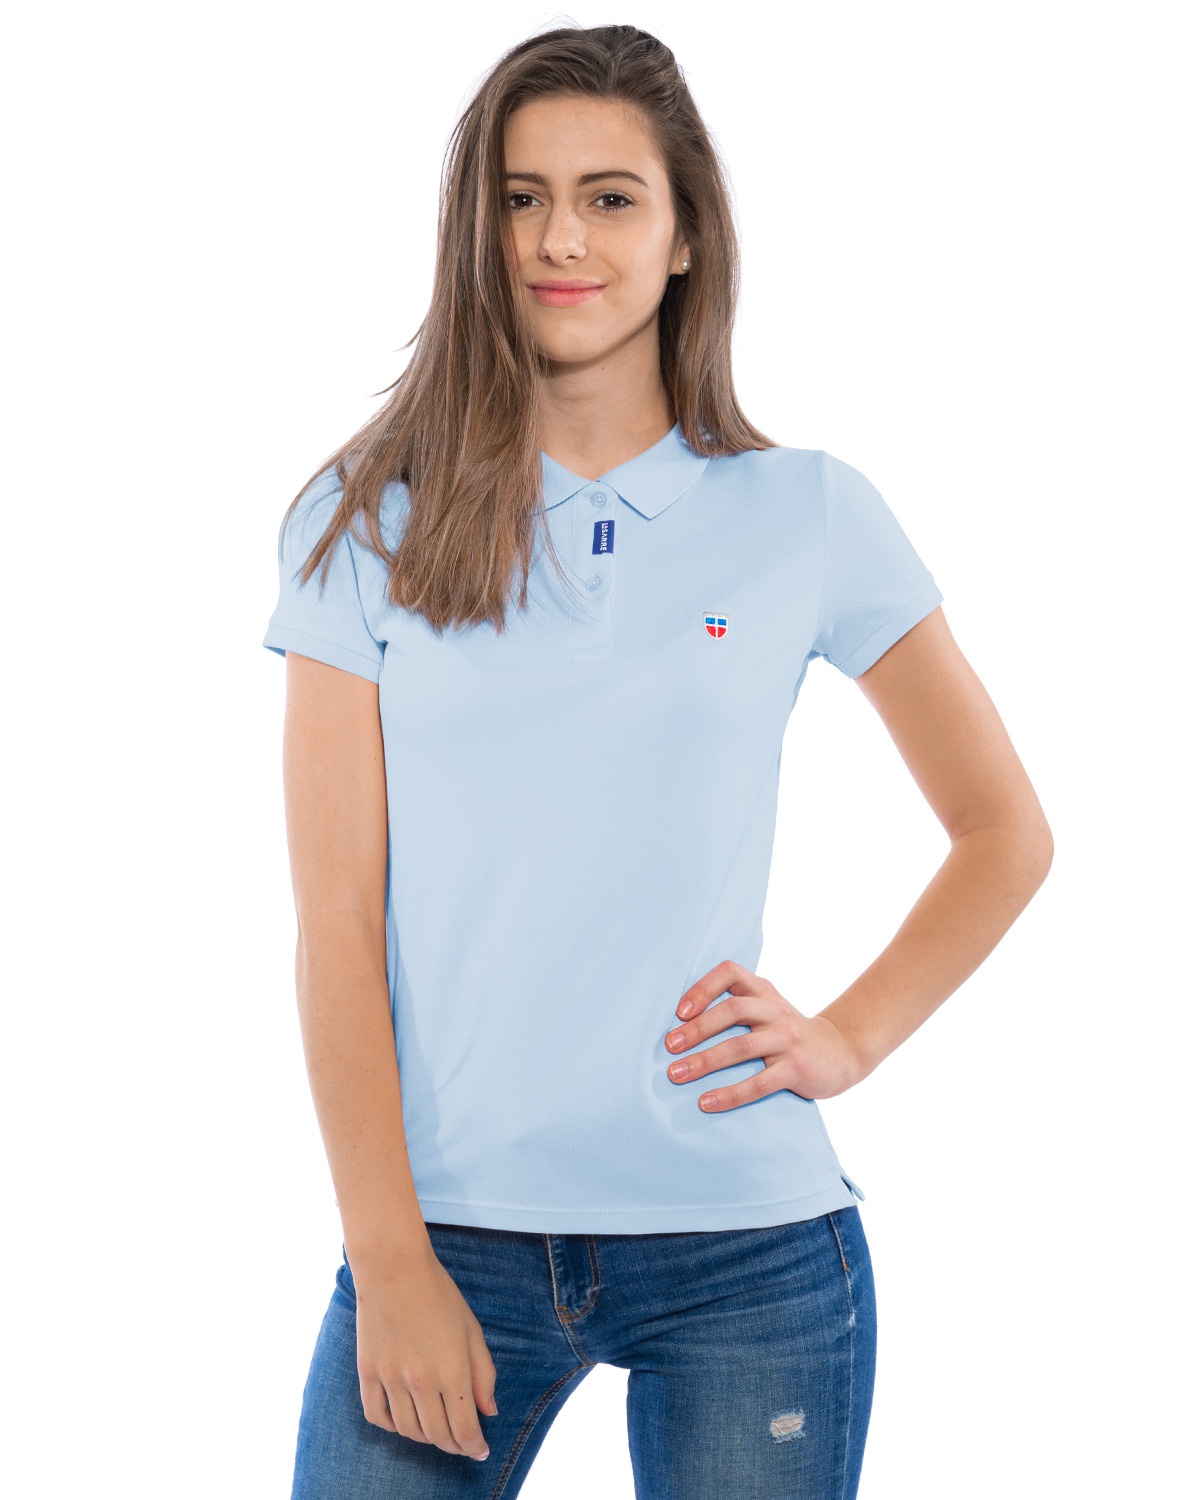 Junge Frau in sportlich eleganter Pose im azure-farbenen Ladies-Polo-Shirt der Saarland-Marke LA SARRE. Auffällig ist das blaue LA SARRE Saumlabel an der Knopfleiste und das Sarre-Wappen als Stickerei auf der Brust.